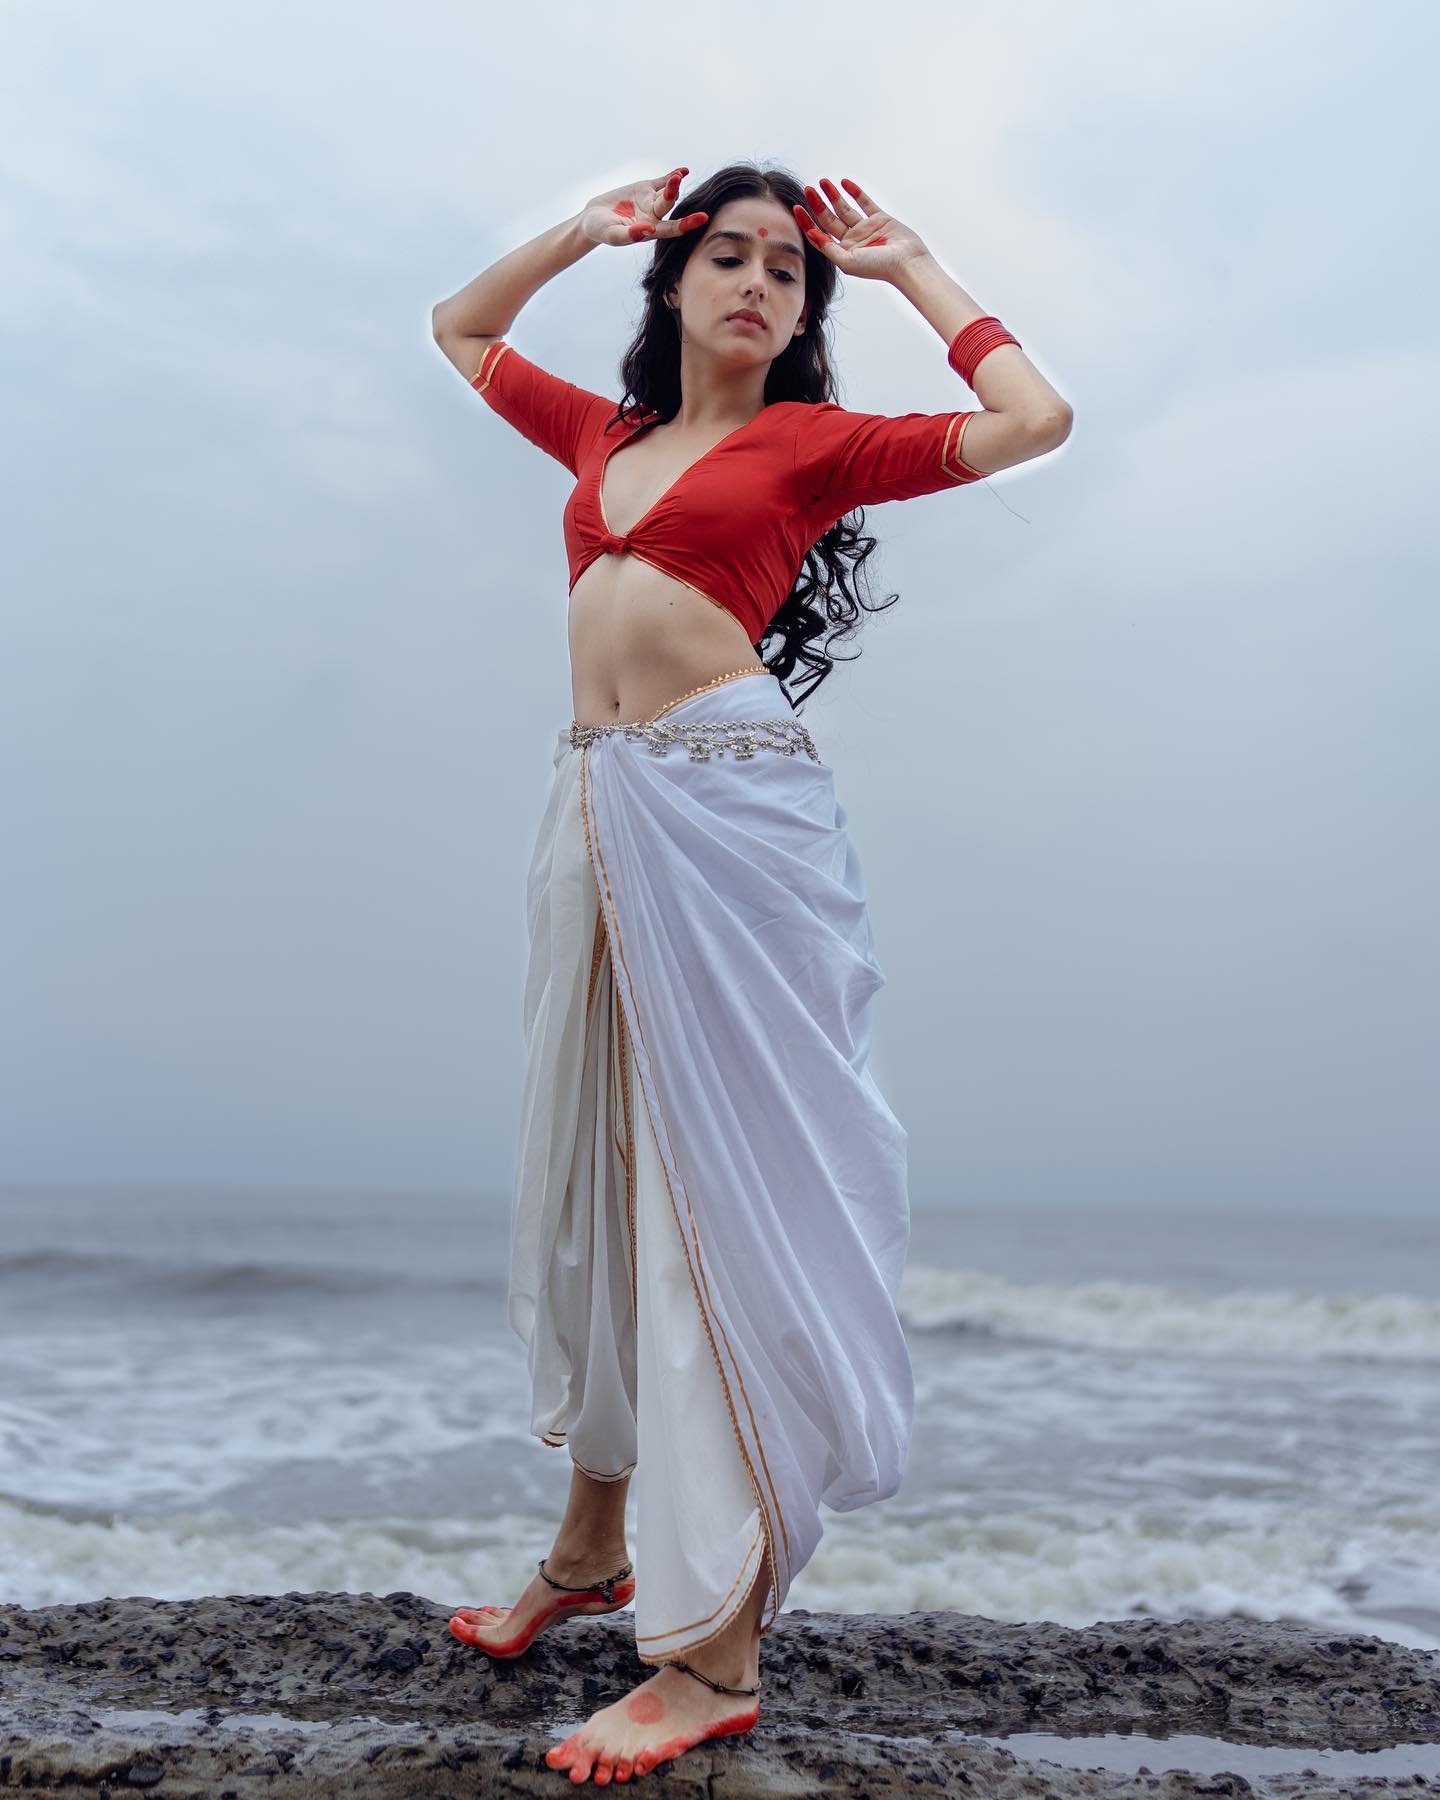 Anaswara-Rajan-Photoshoot-as-Dancer-3